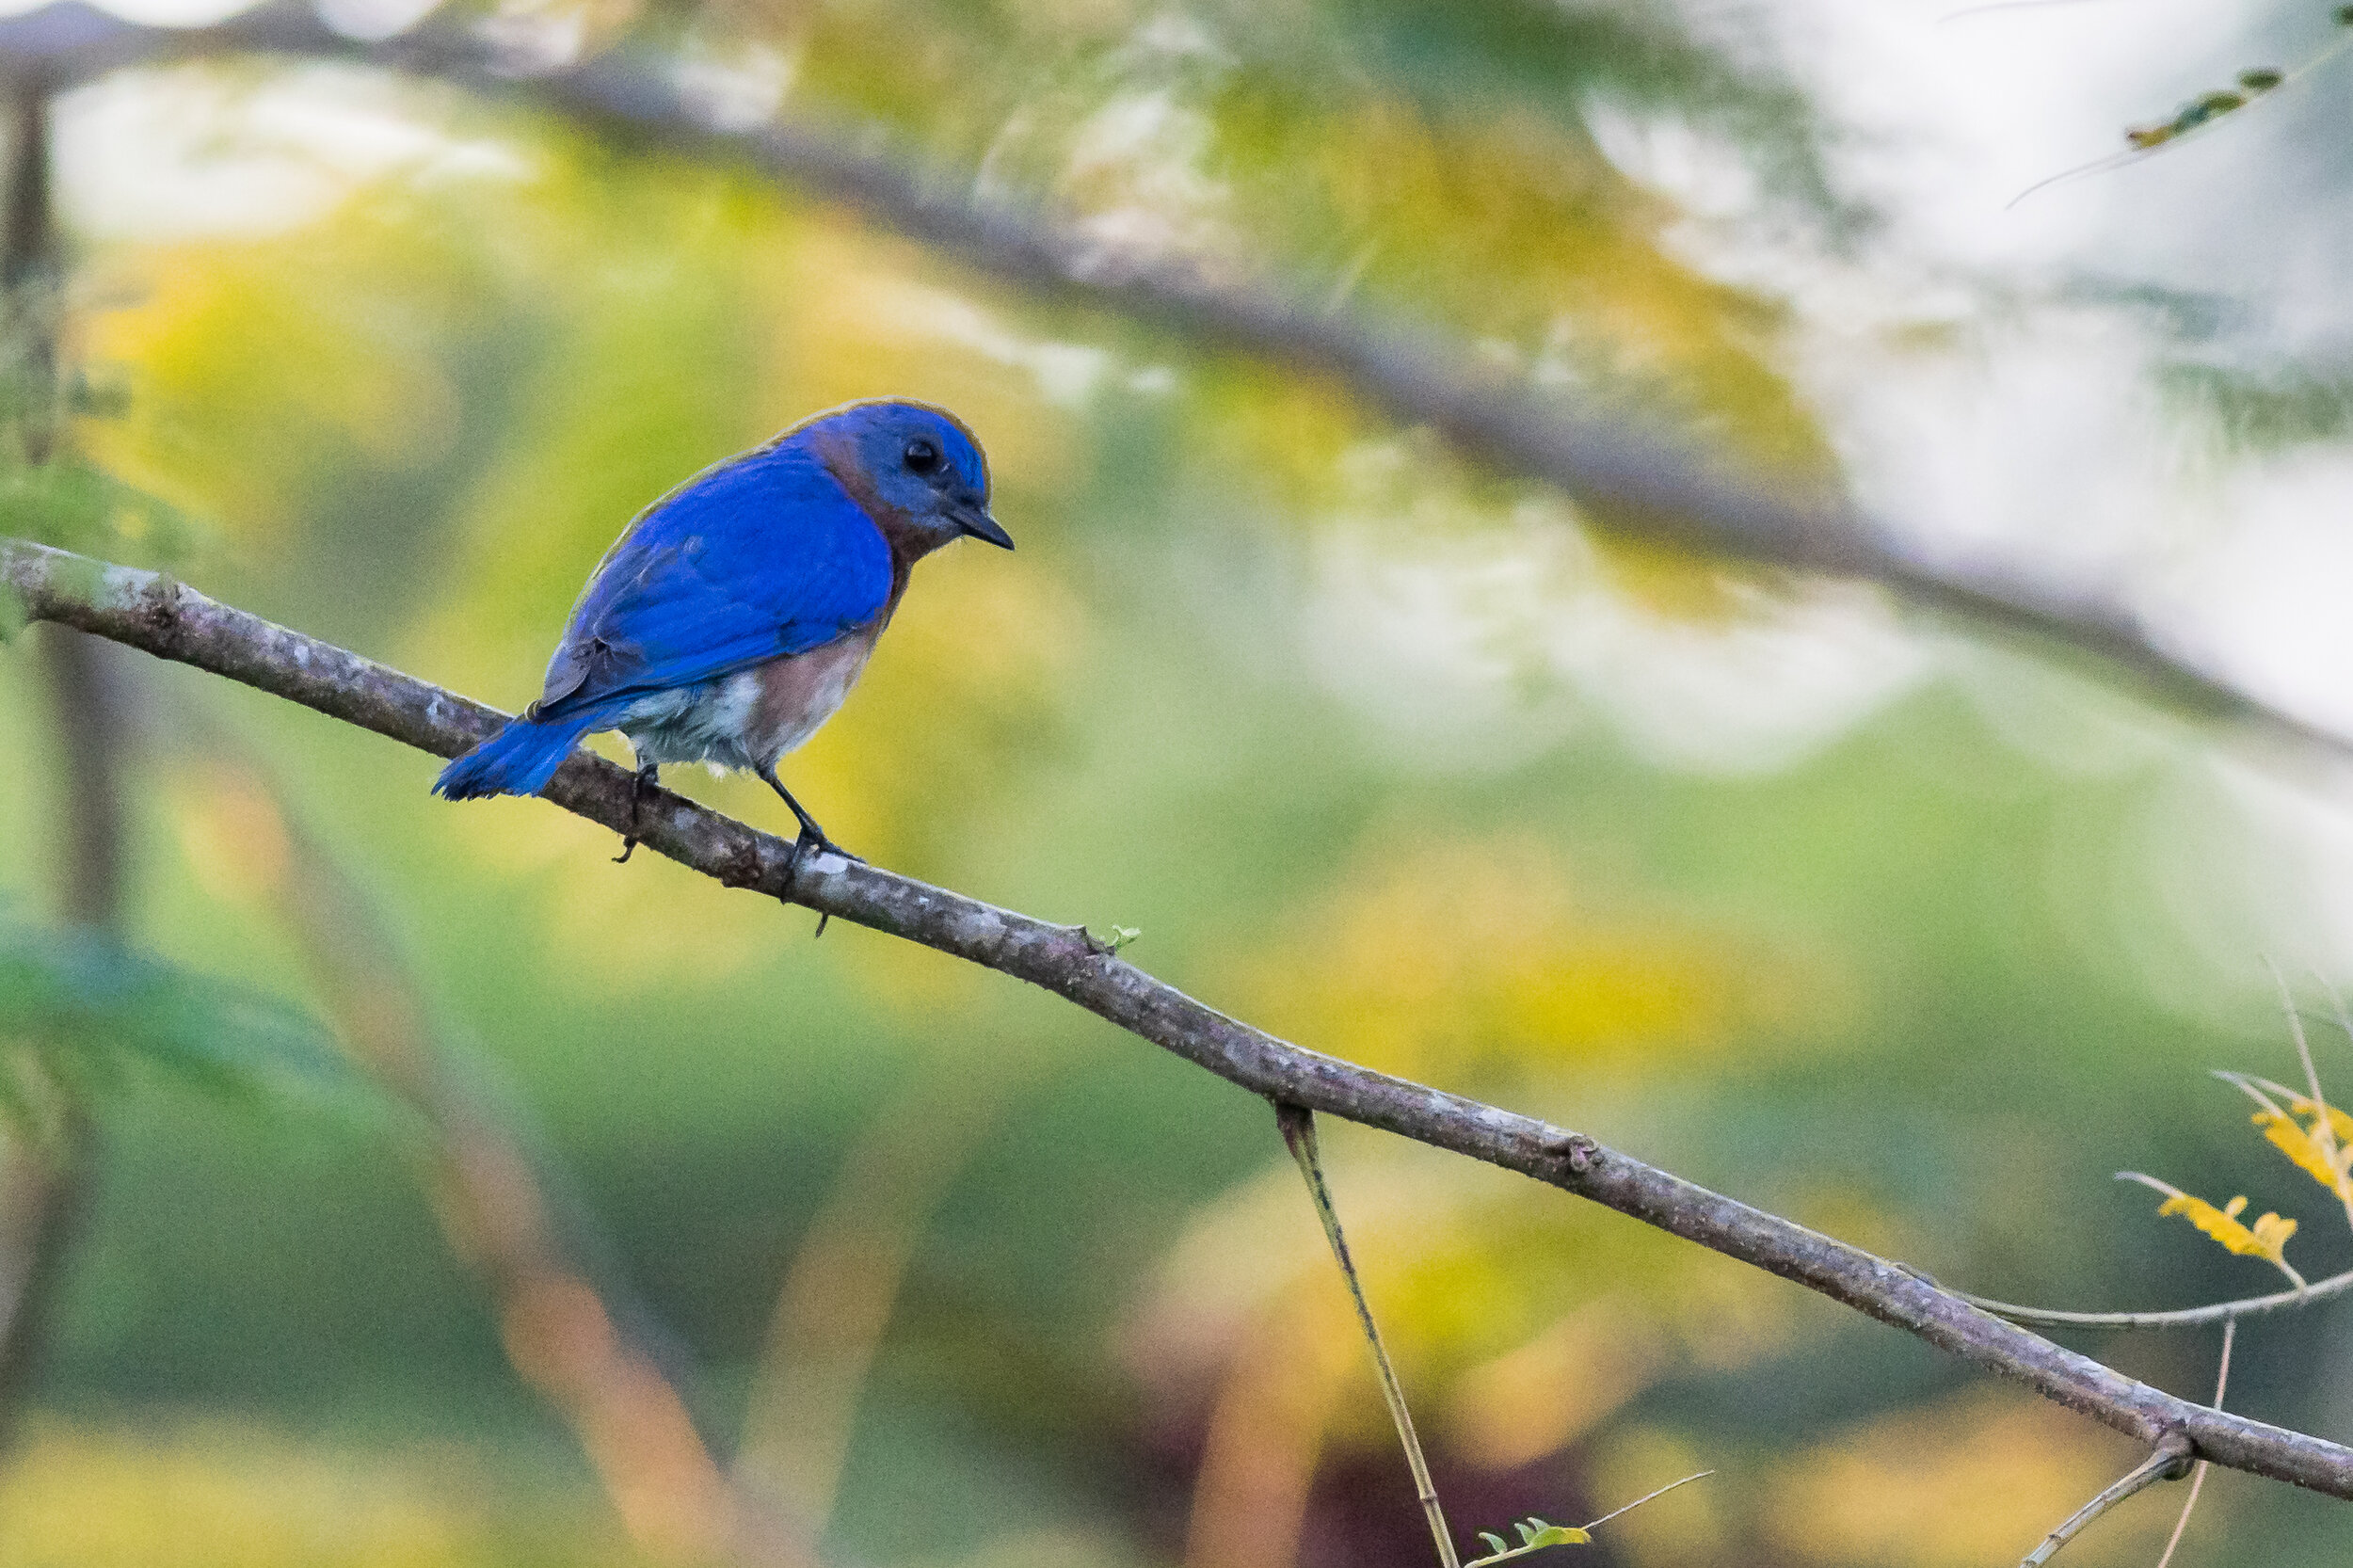 Male, Eastern Bluebird